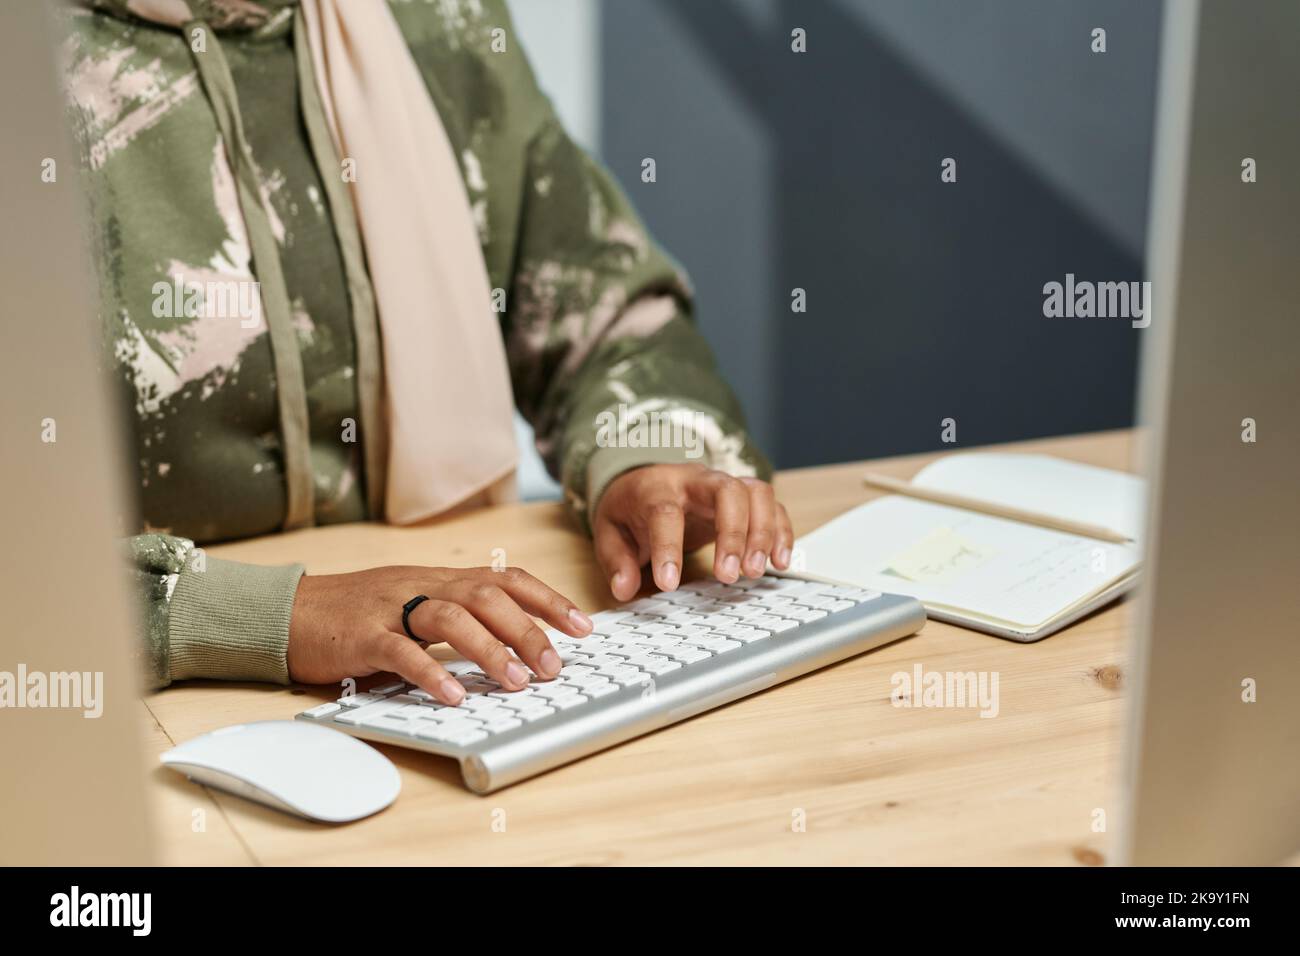 Les mains de jeunes femmes d'affaires musulmanes en vêtements décontractés dactylographiant sur un clavier d'ordinateur tout en développant de nouveaux logiciels Banque D'Images